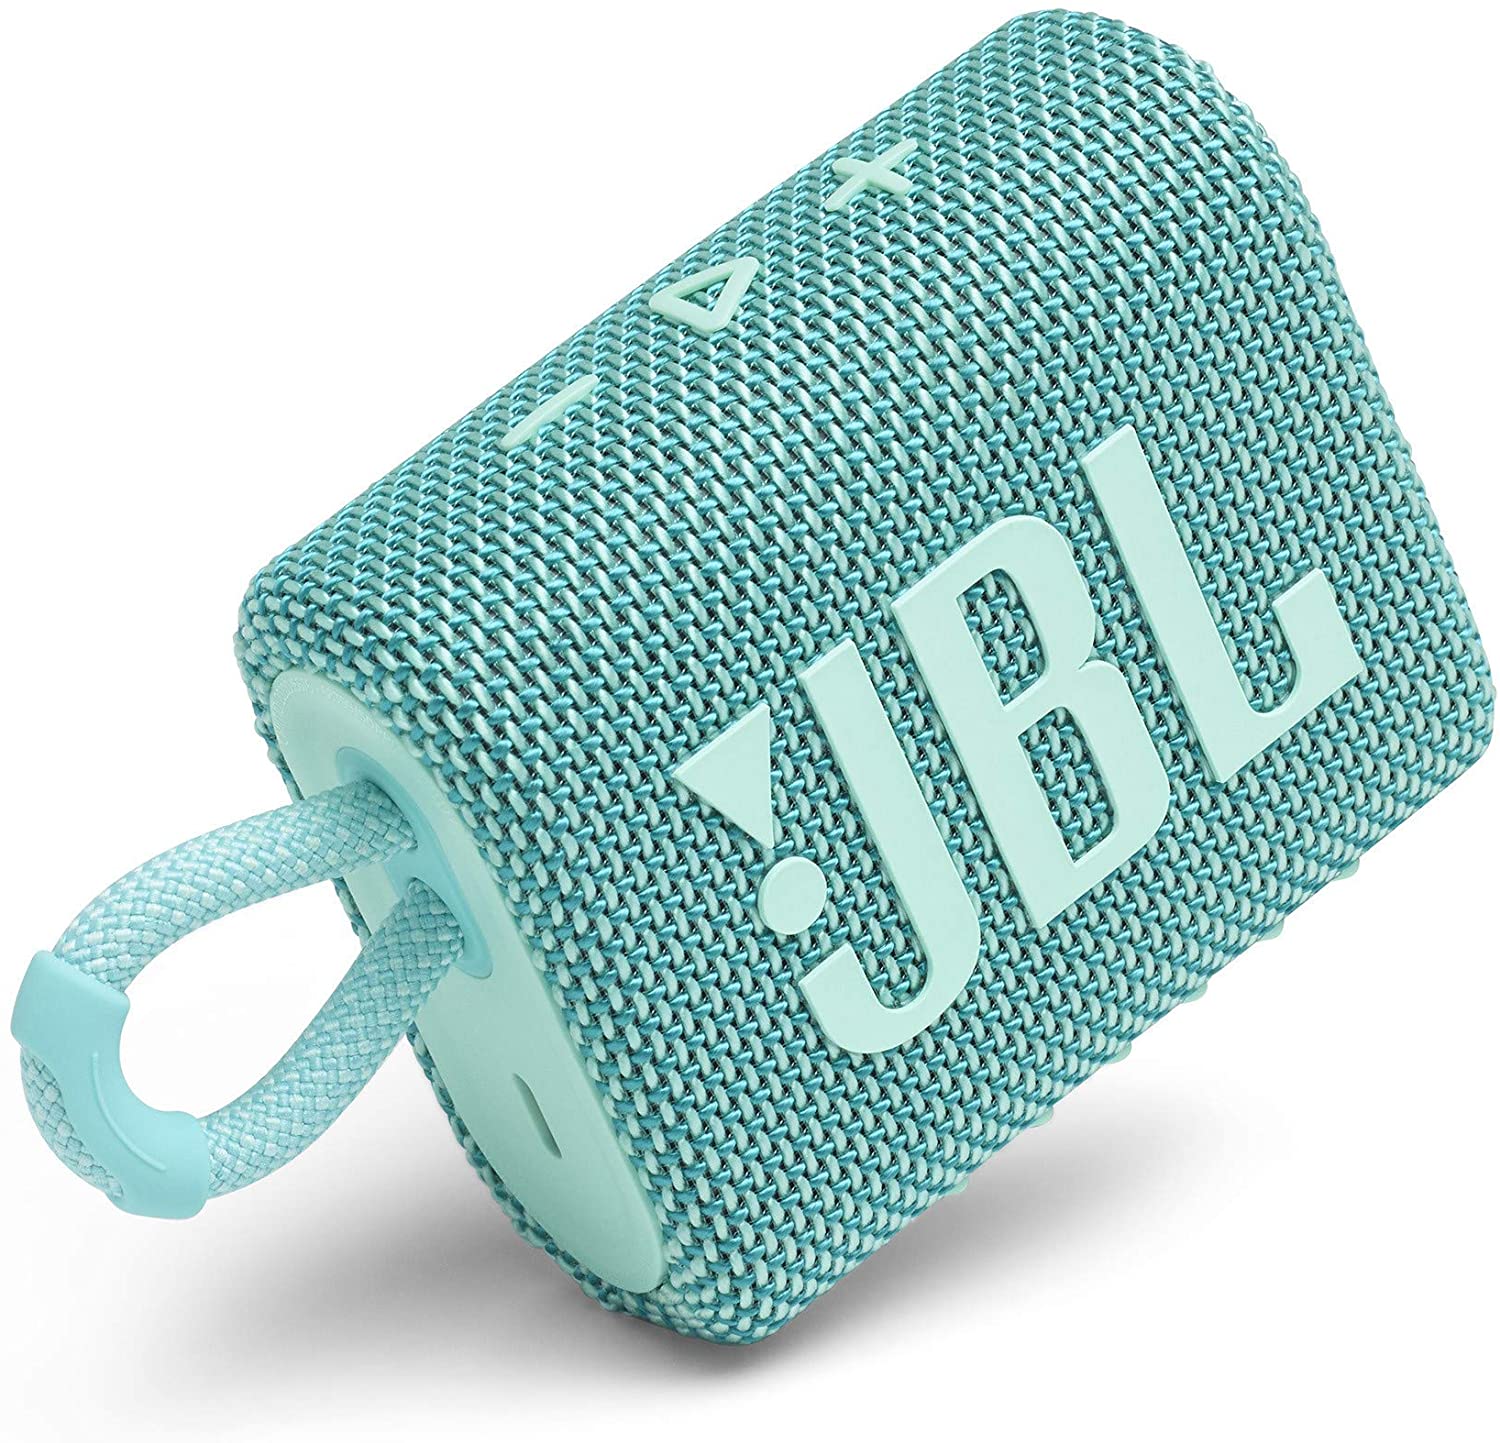 New JBL Go 3 Portable Waterproof and Dustproof Wireless Speaker